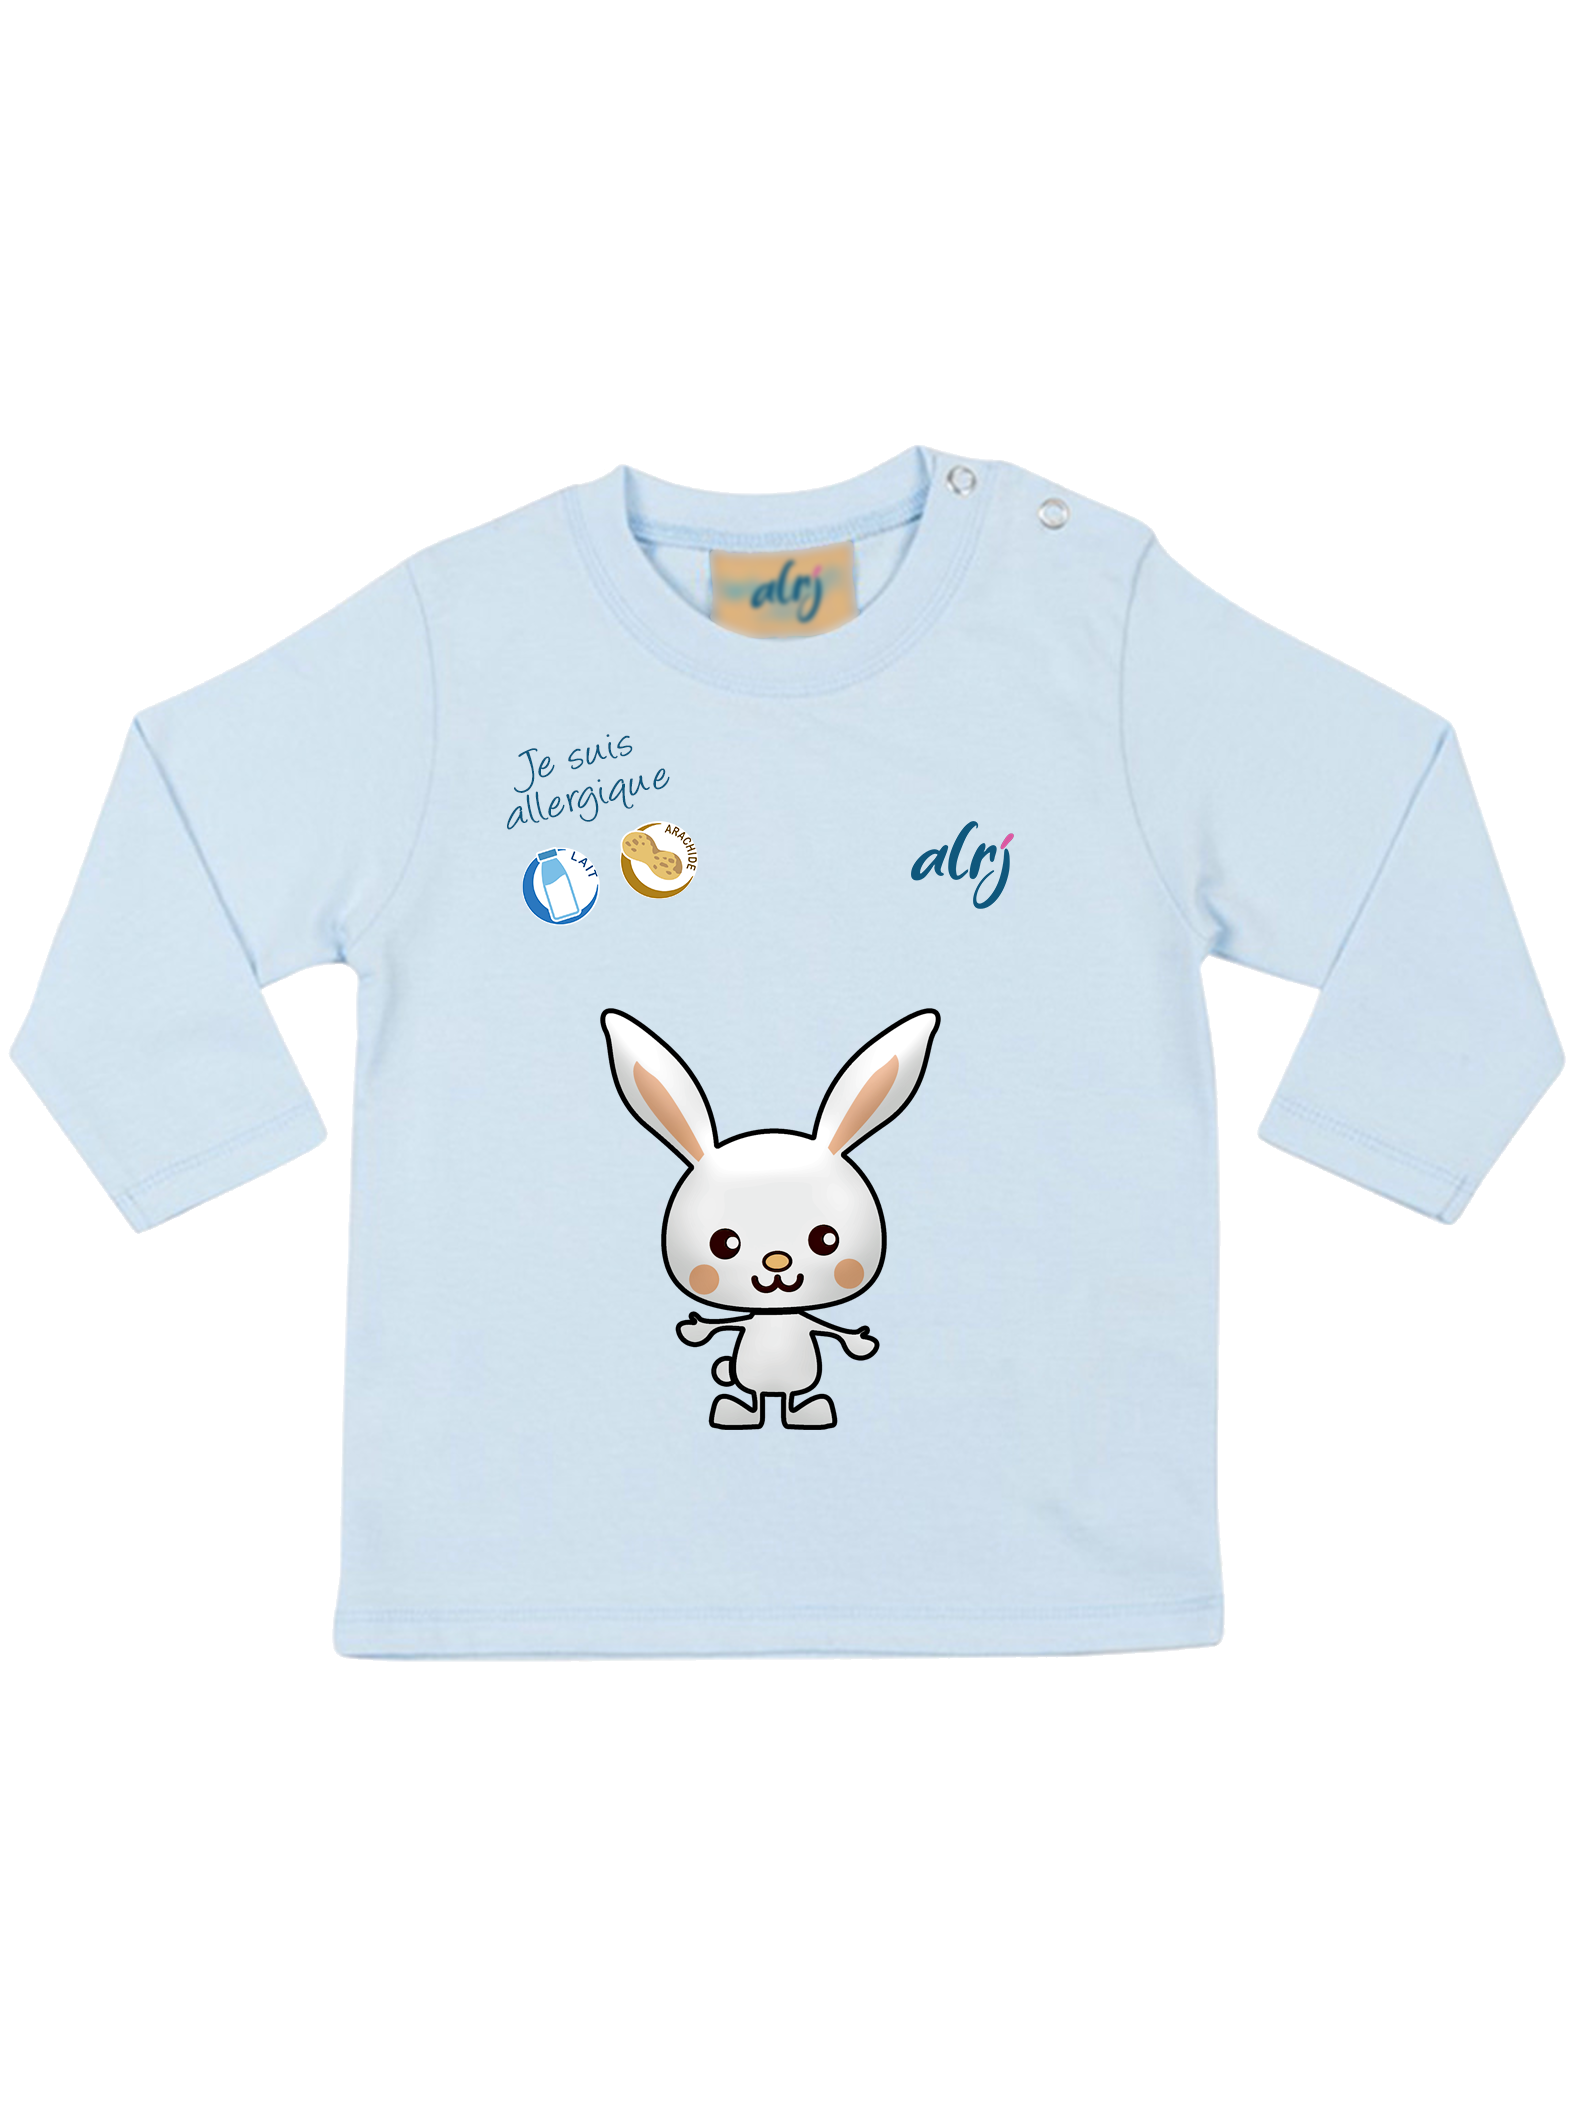 T-shirt bébé manches longues allergie motif lapin